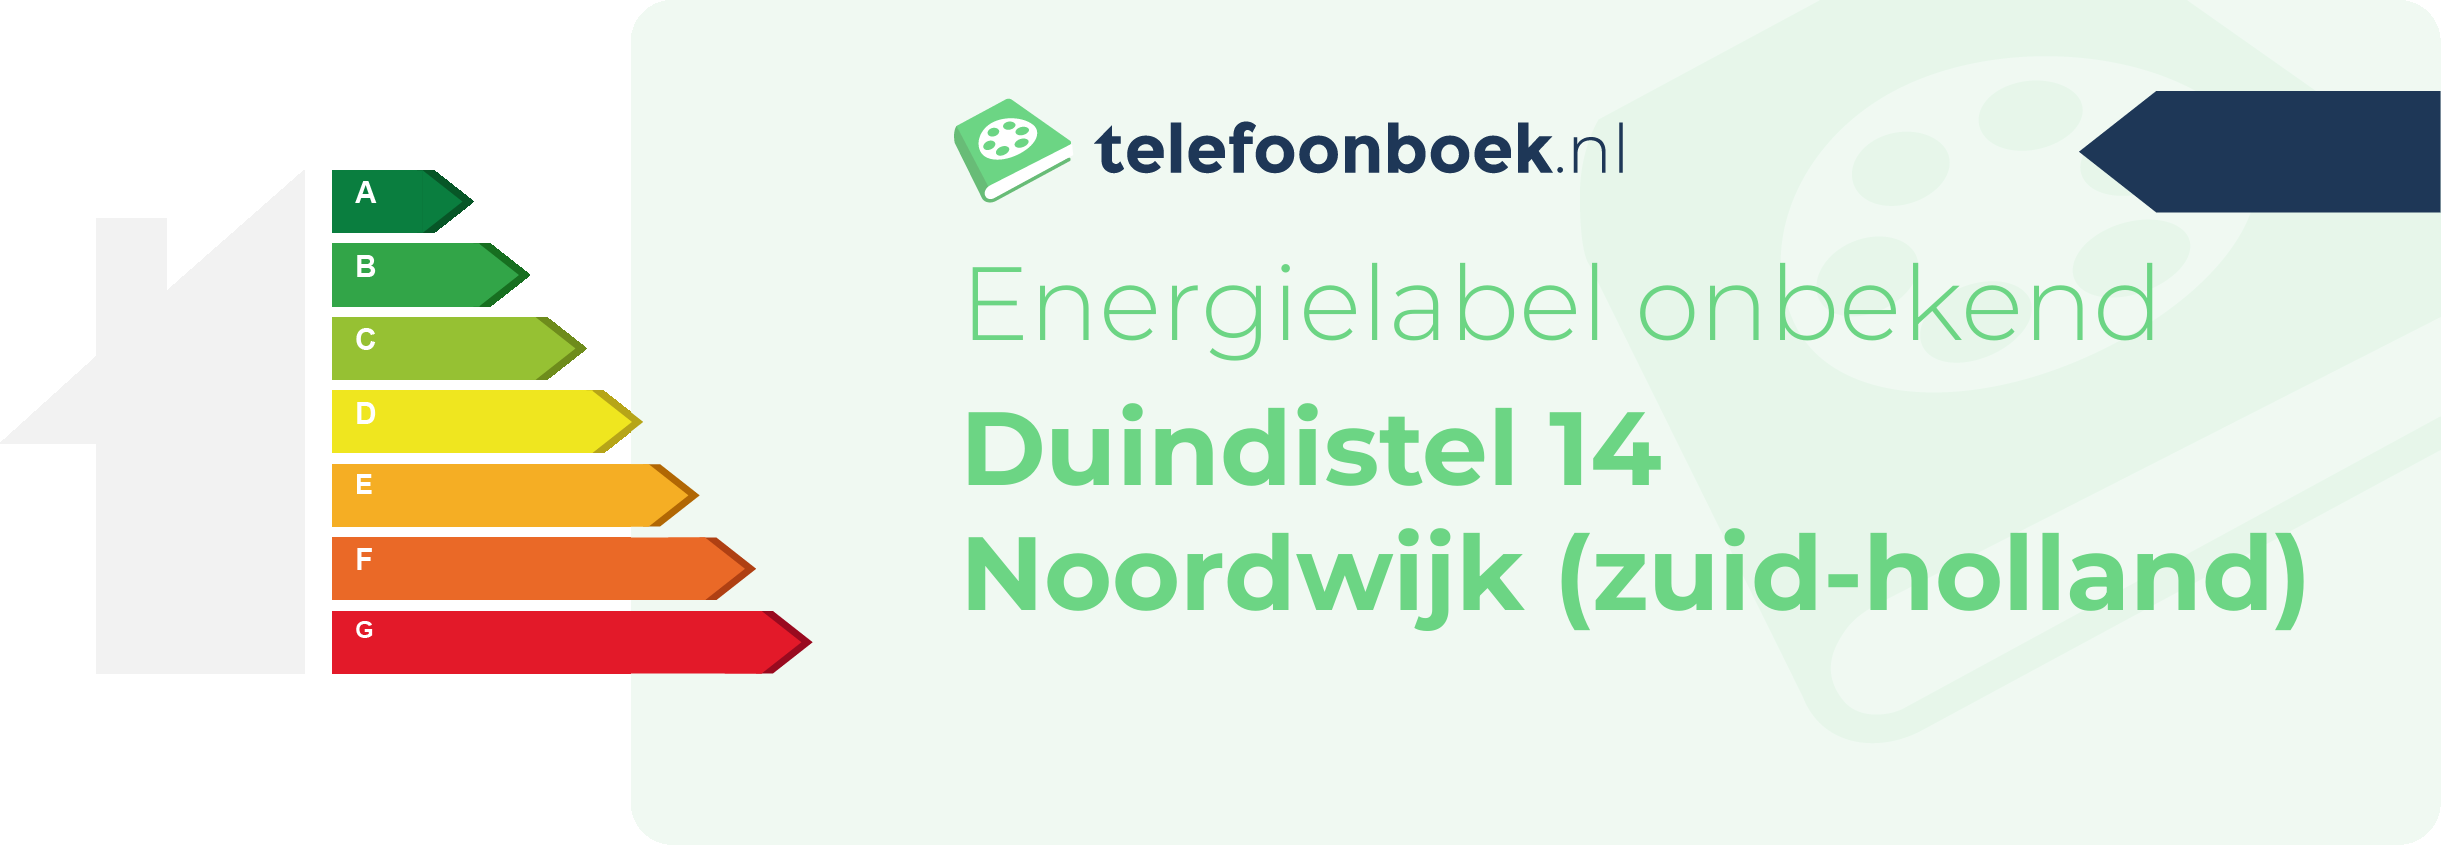 Energielabel Duindistel 14 Noordwijk (Zuid-Holland)